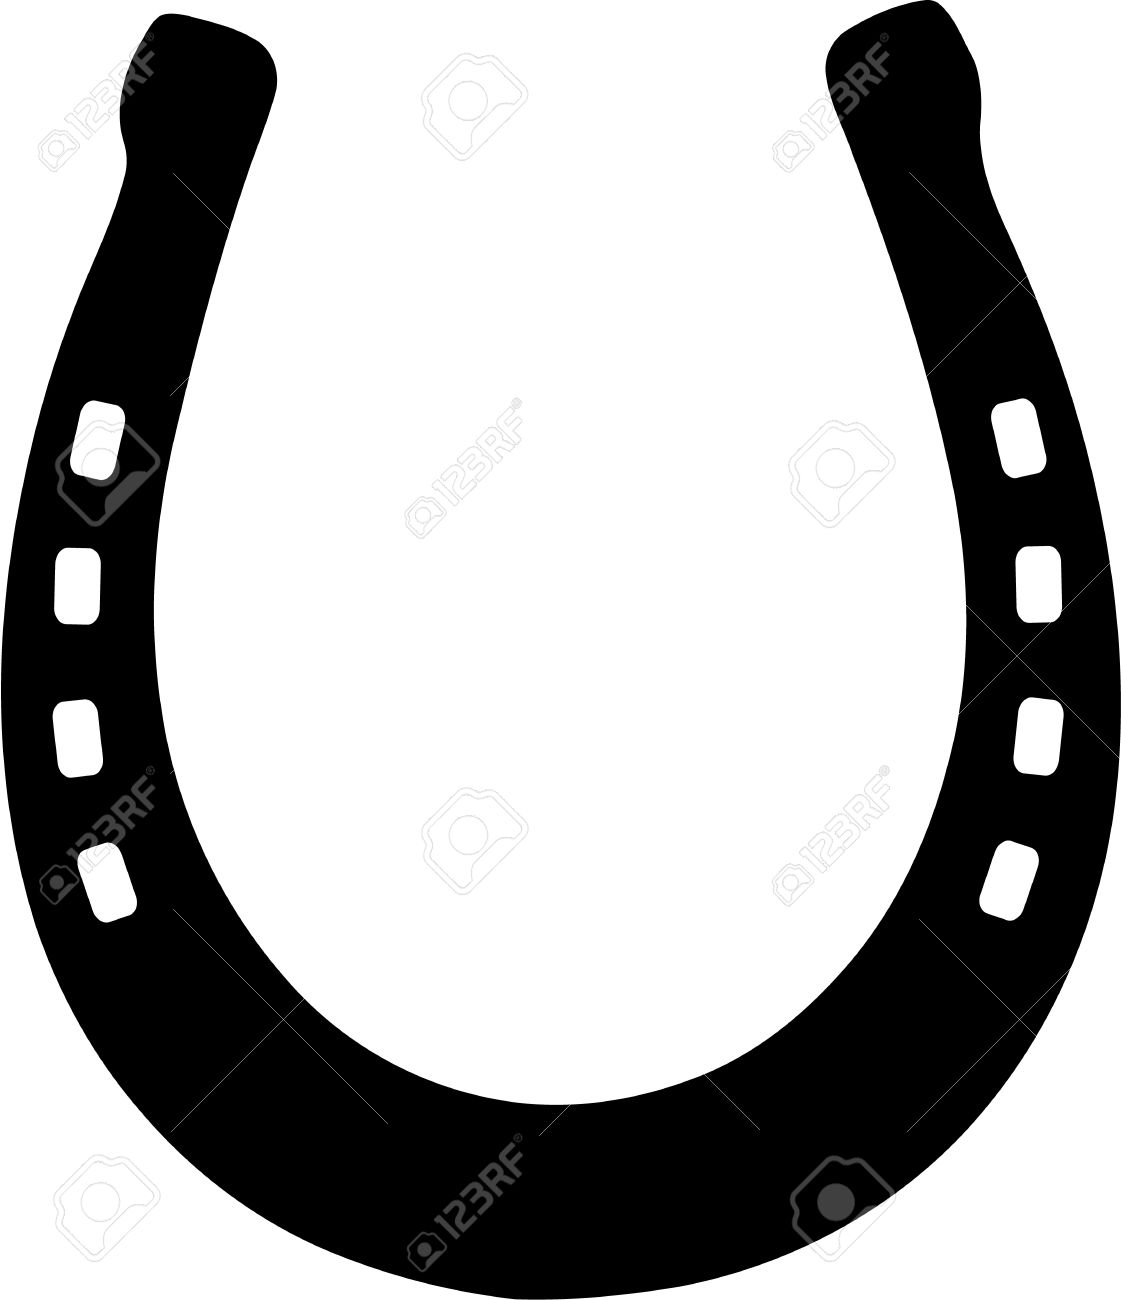 horse shoes: Horseshoe icon